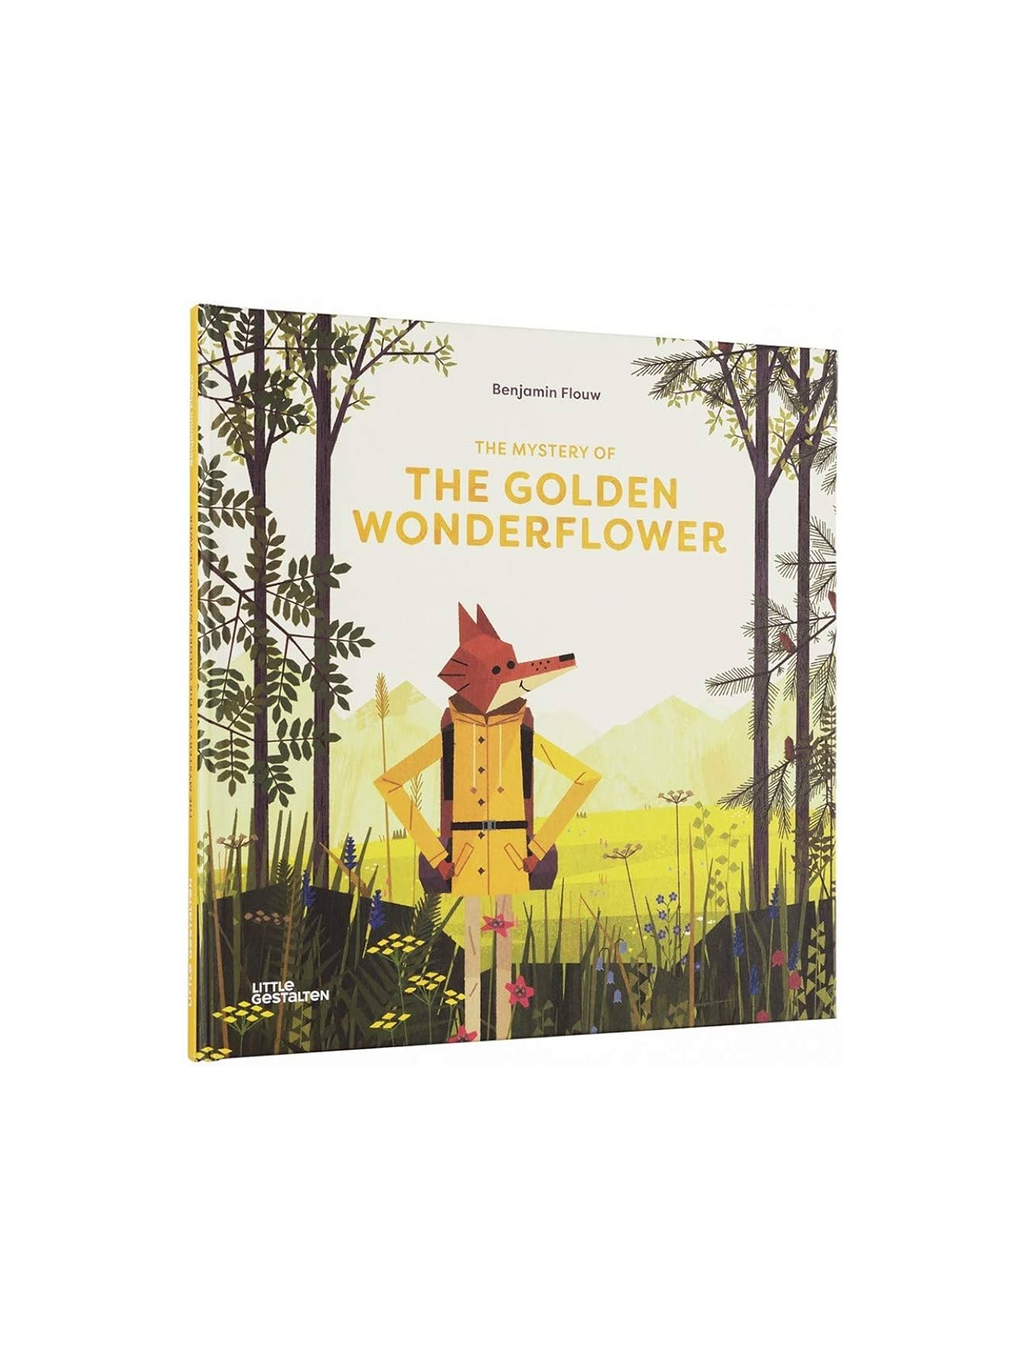 The Mystery of the Golden Wonderflower